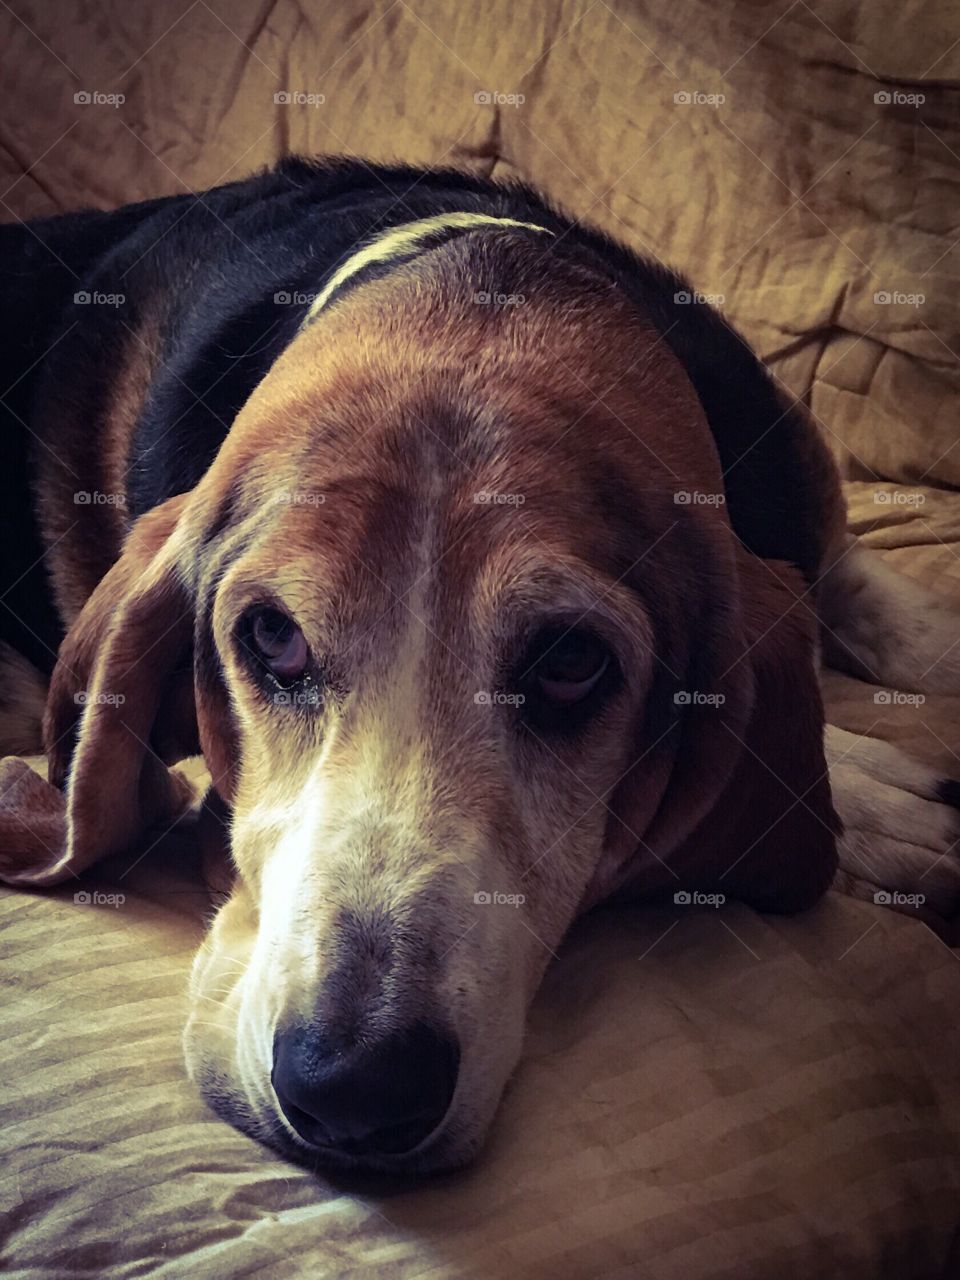 My Basset hound in portrait